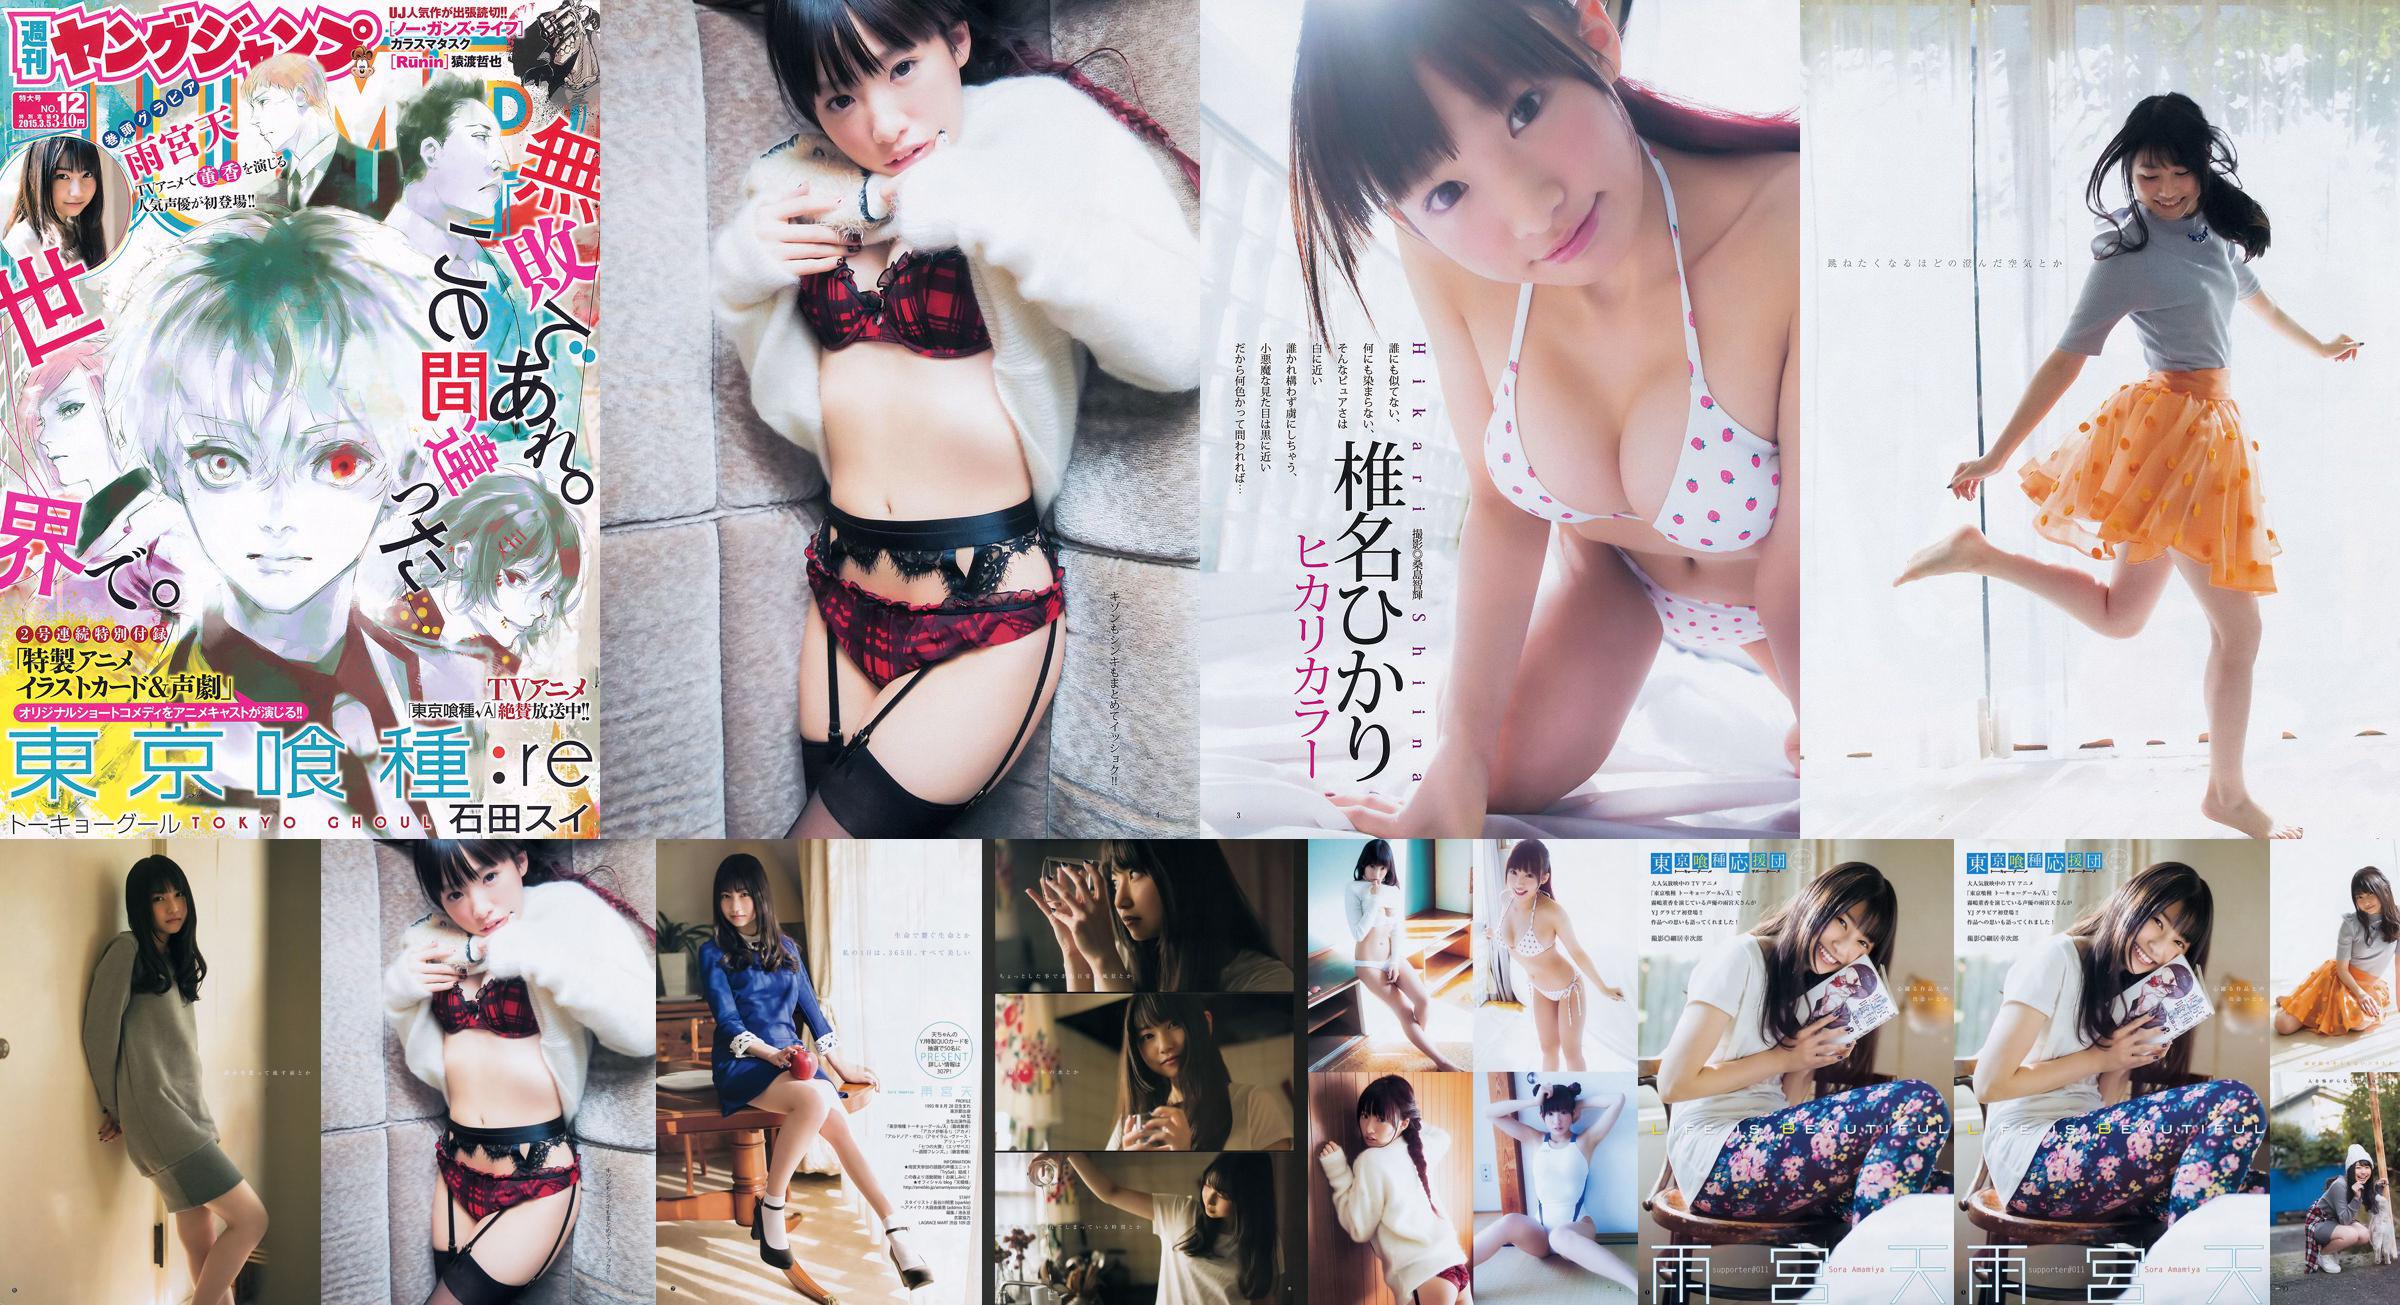 Amamiya Tian Shiina ひかり [Weekly Young Jump] 2015 No.12 Photo Magazine No.5774e1 Página 1